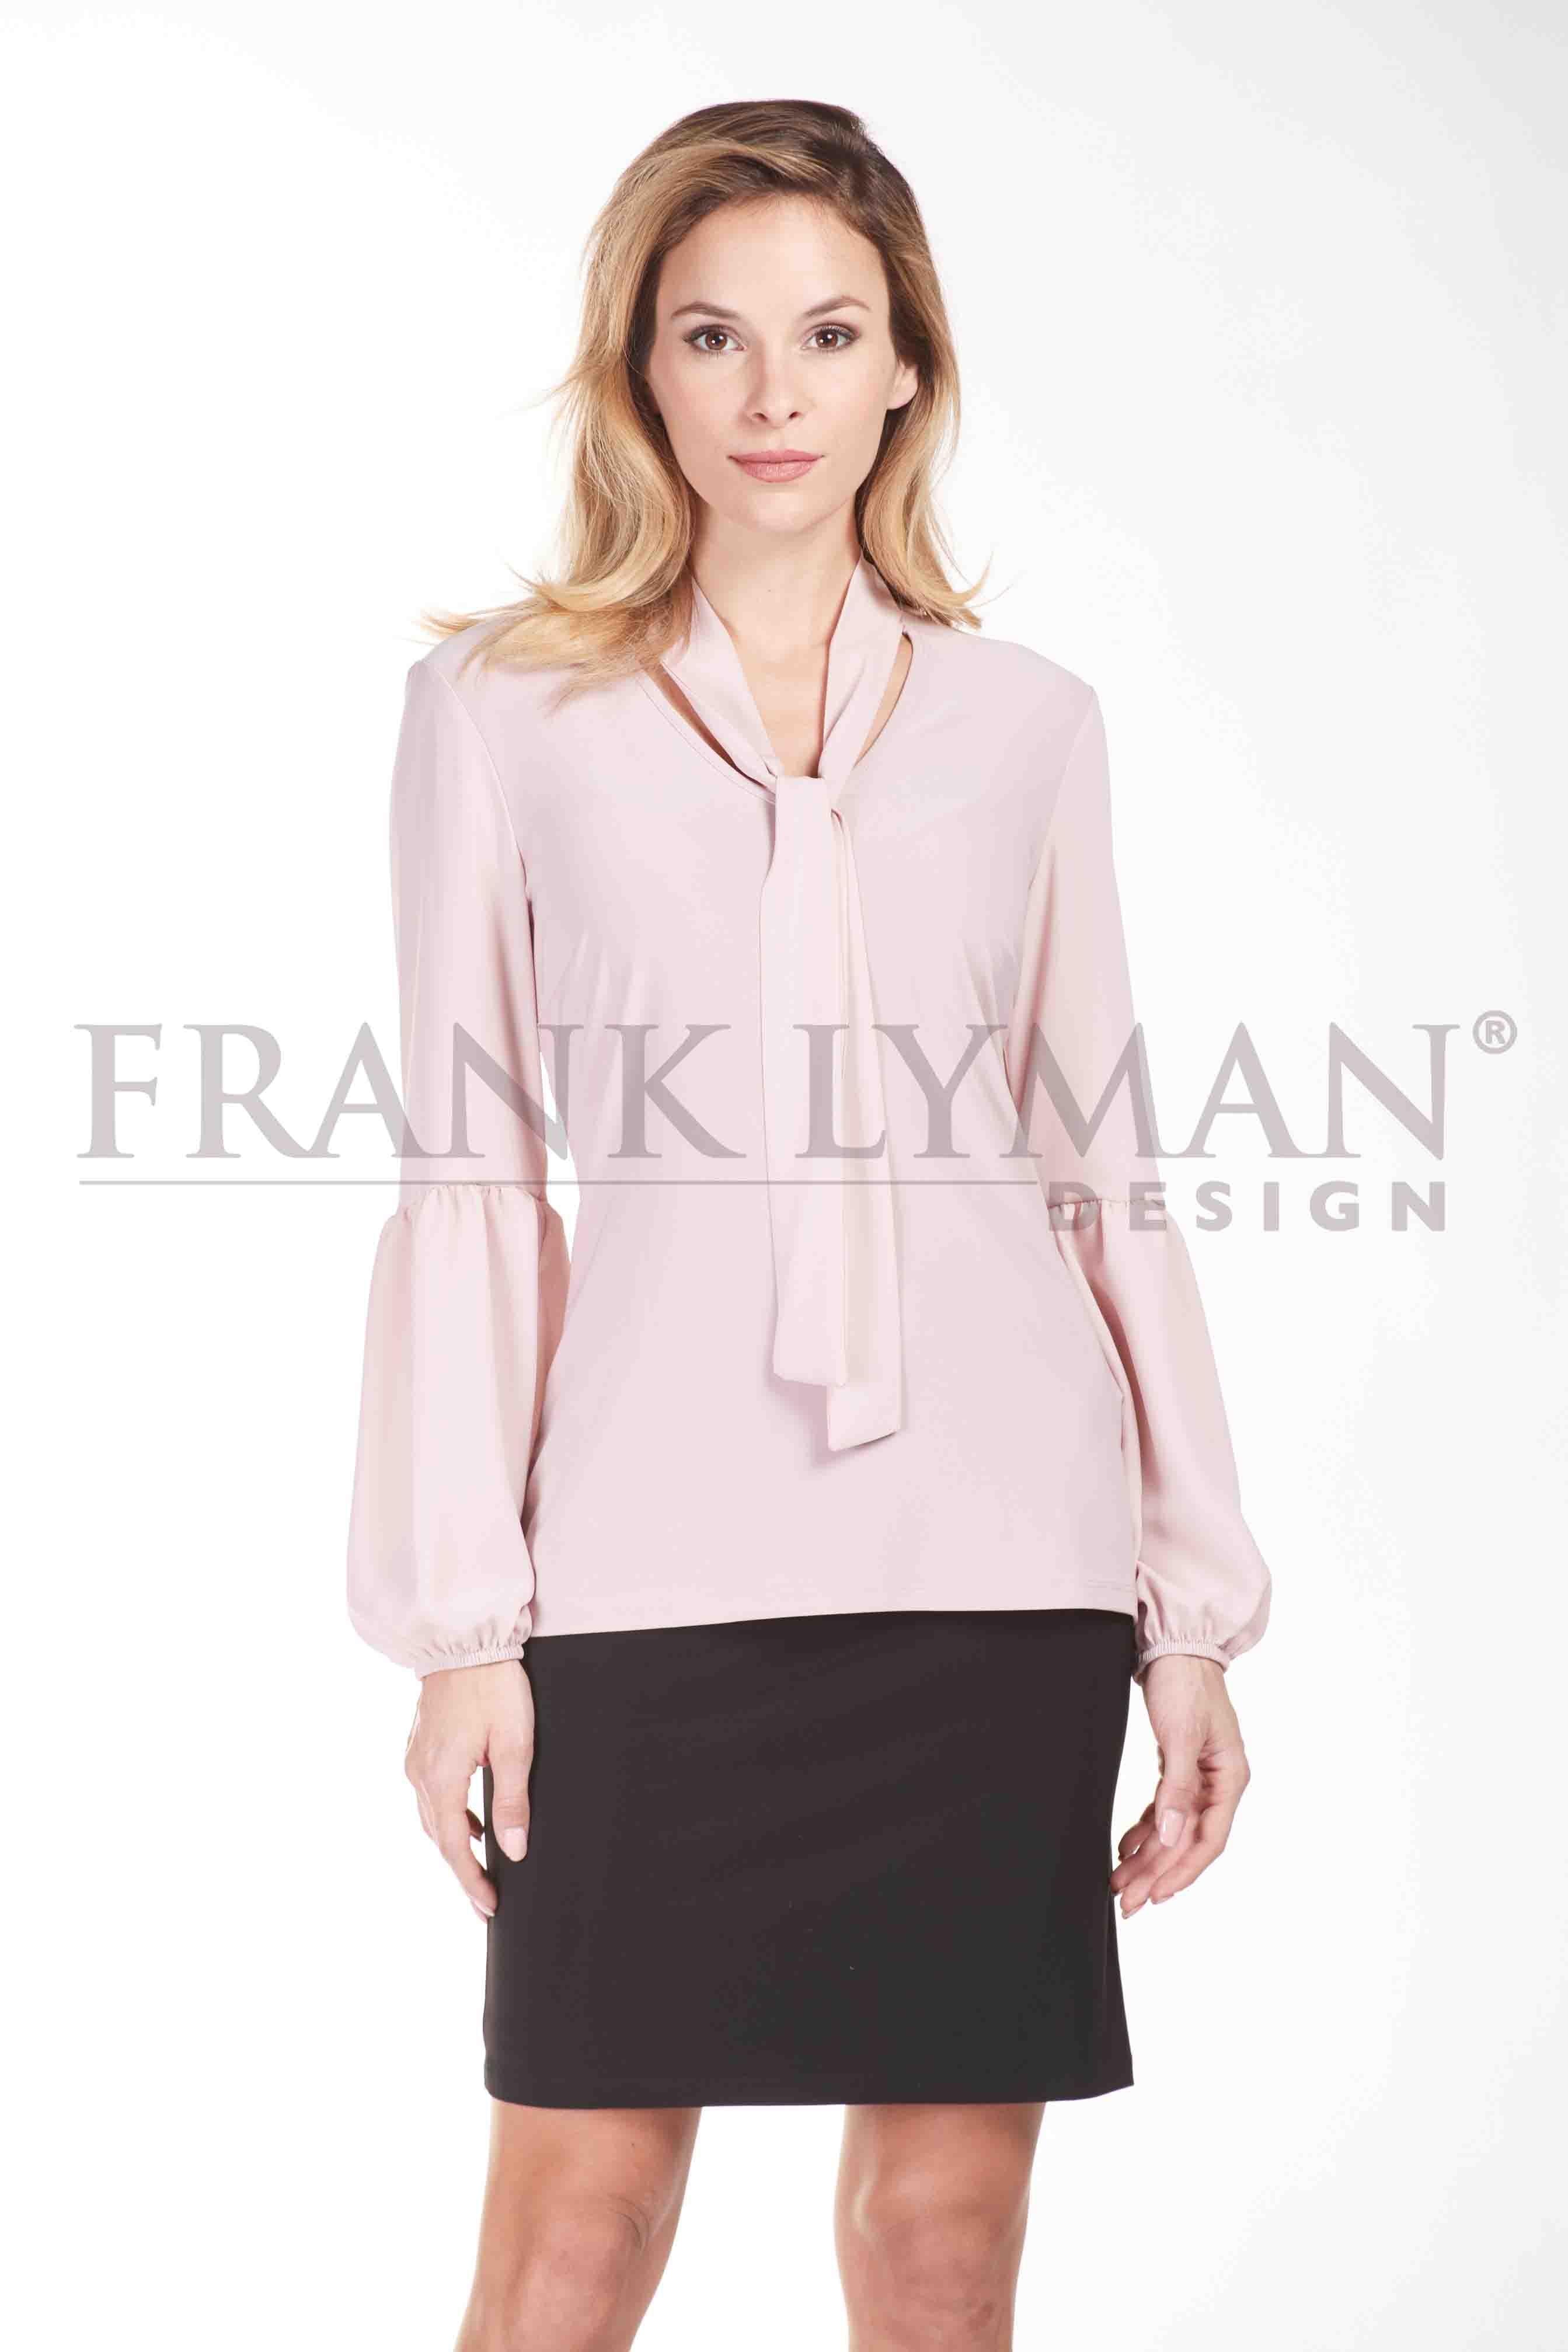 Frank Lyman Sale, Frank Lyman Online Sale, Frank Lyman Warehouse Sale, Frank Lyman Design, Frank Lyman Dresses, Frank Lyman Online Shop